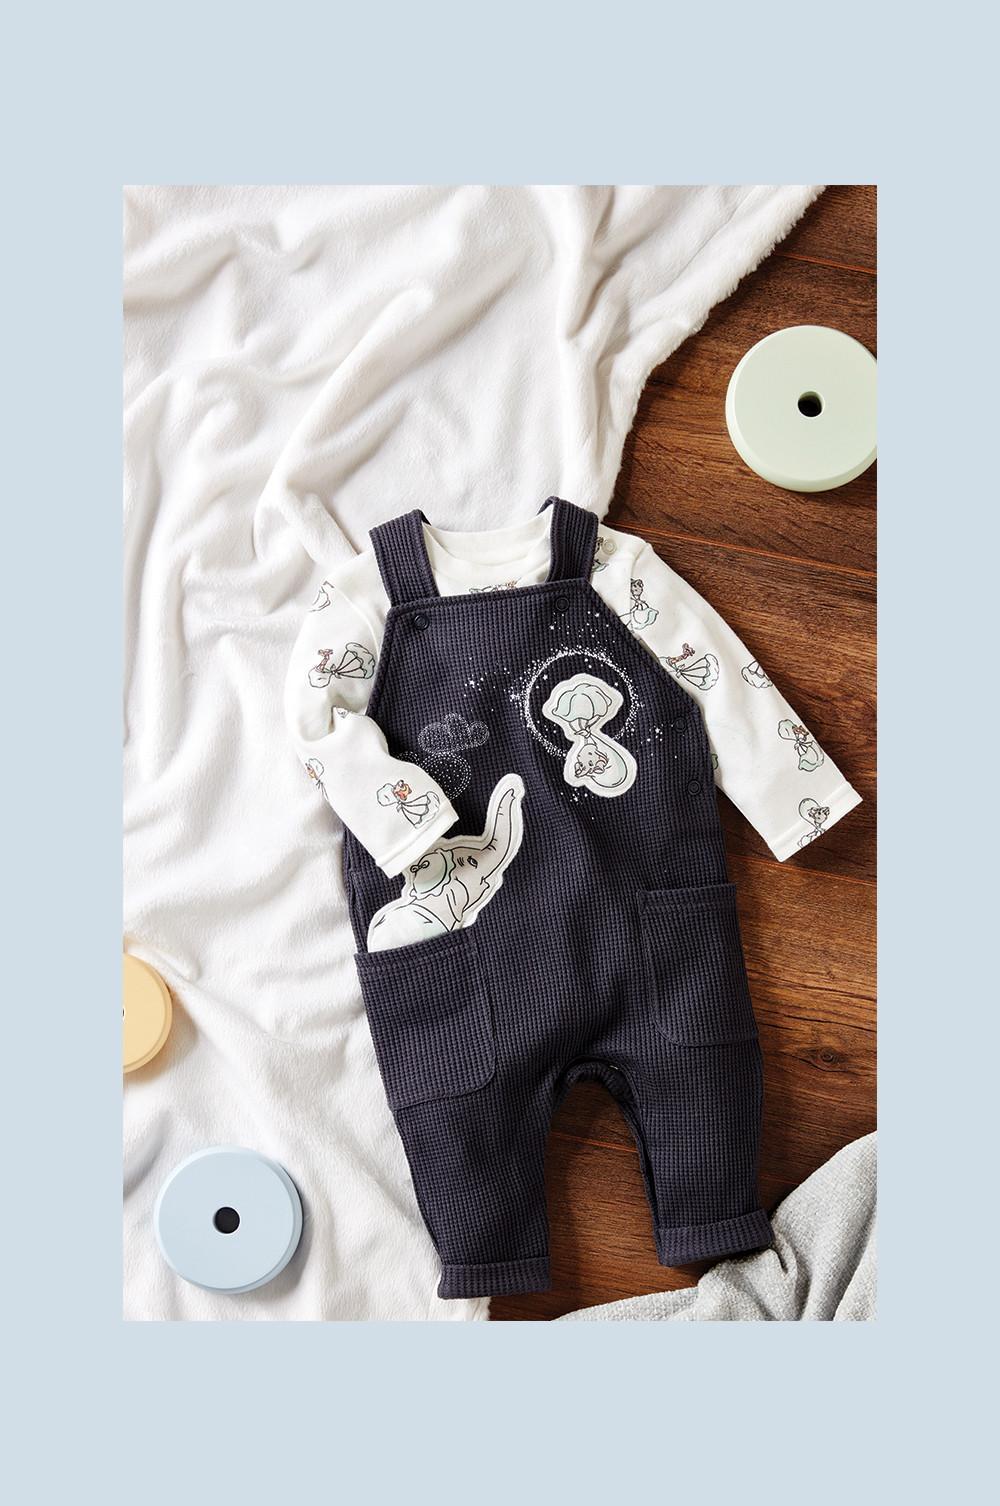 mar Mediterráneo por ciento Teoría básica Colección de «Dumbo» de Disney de ropa de bebé, accesorios para la  habitación del bebé y papelería | Primark